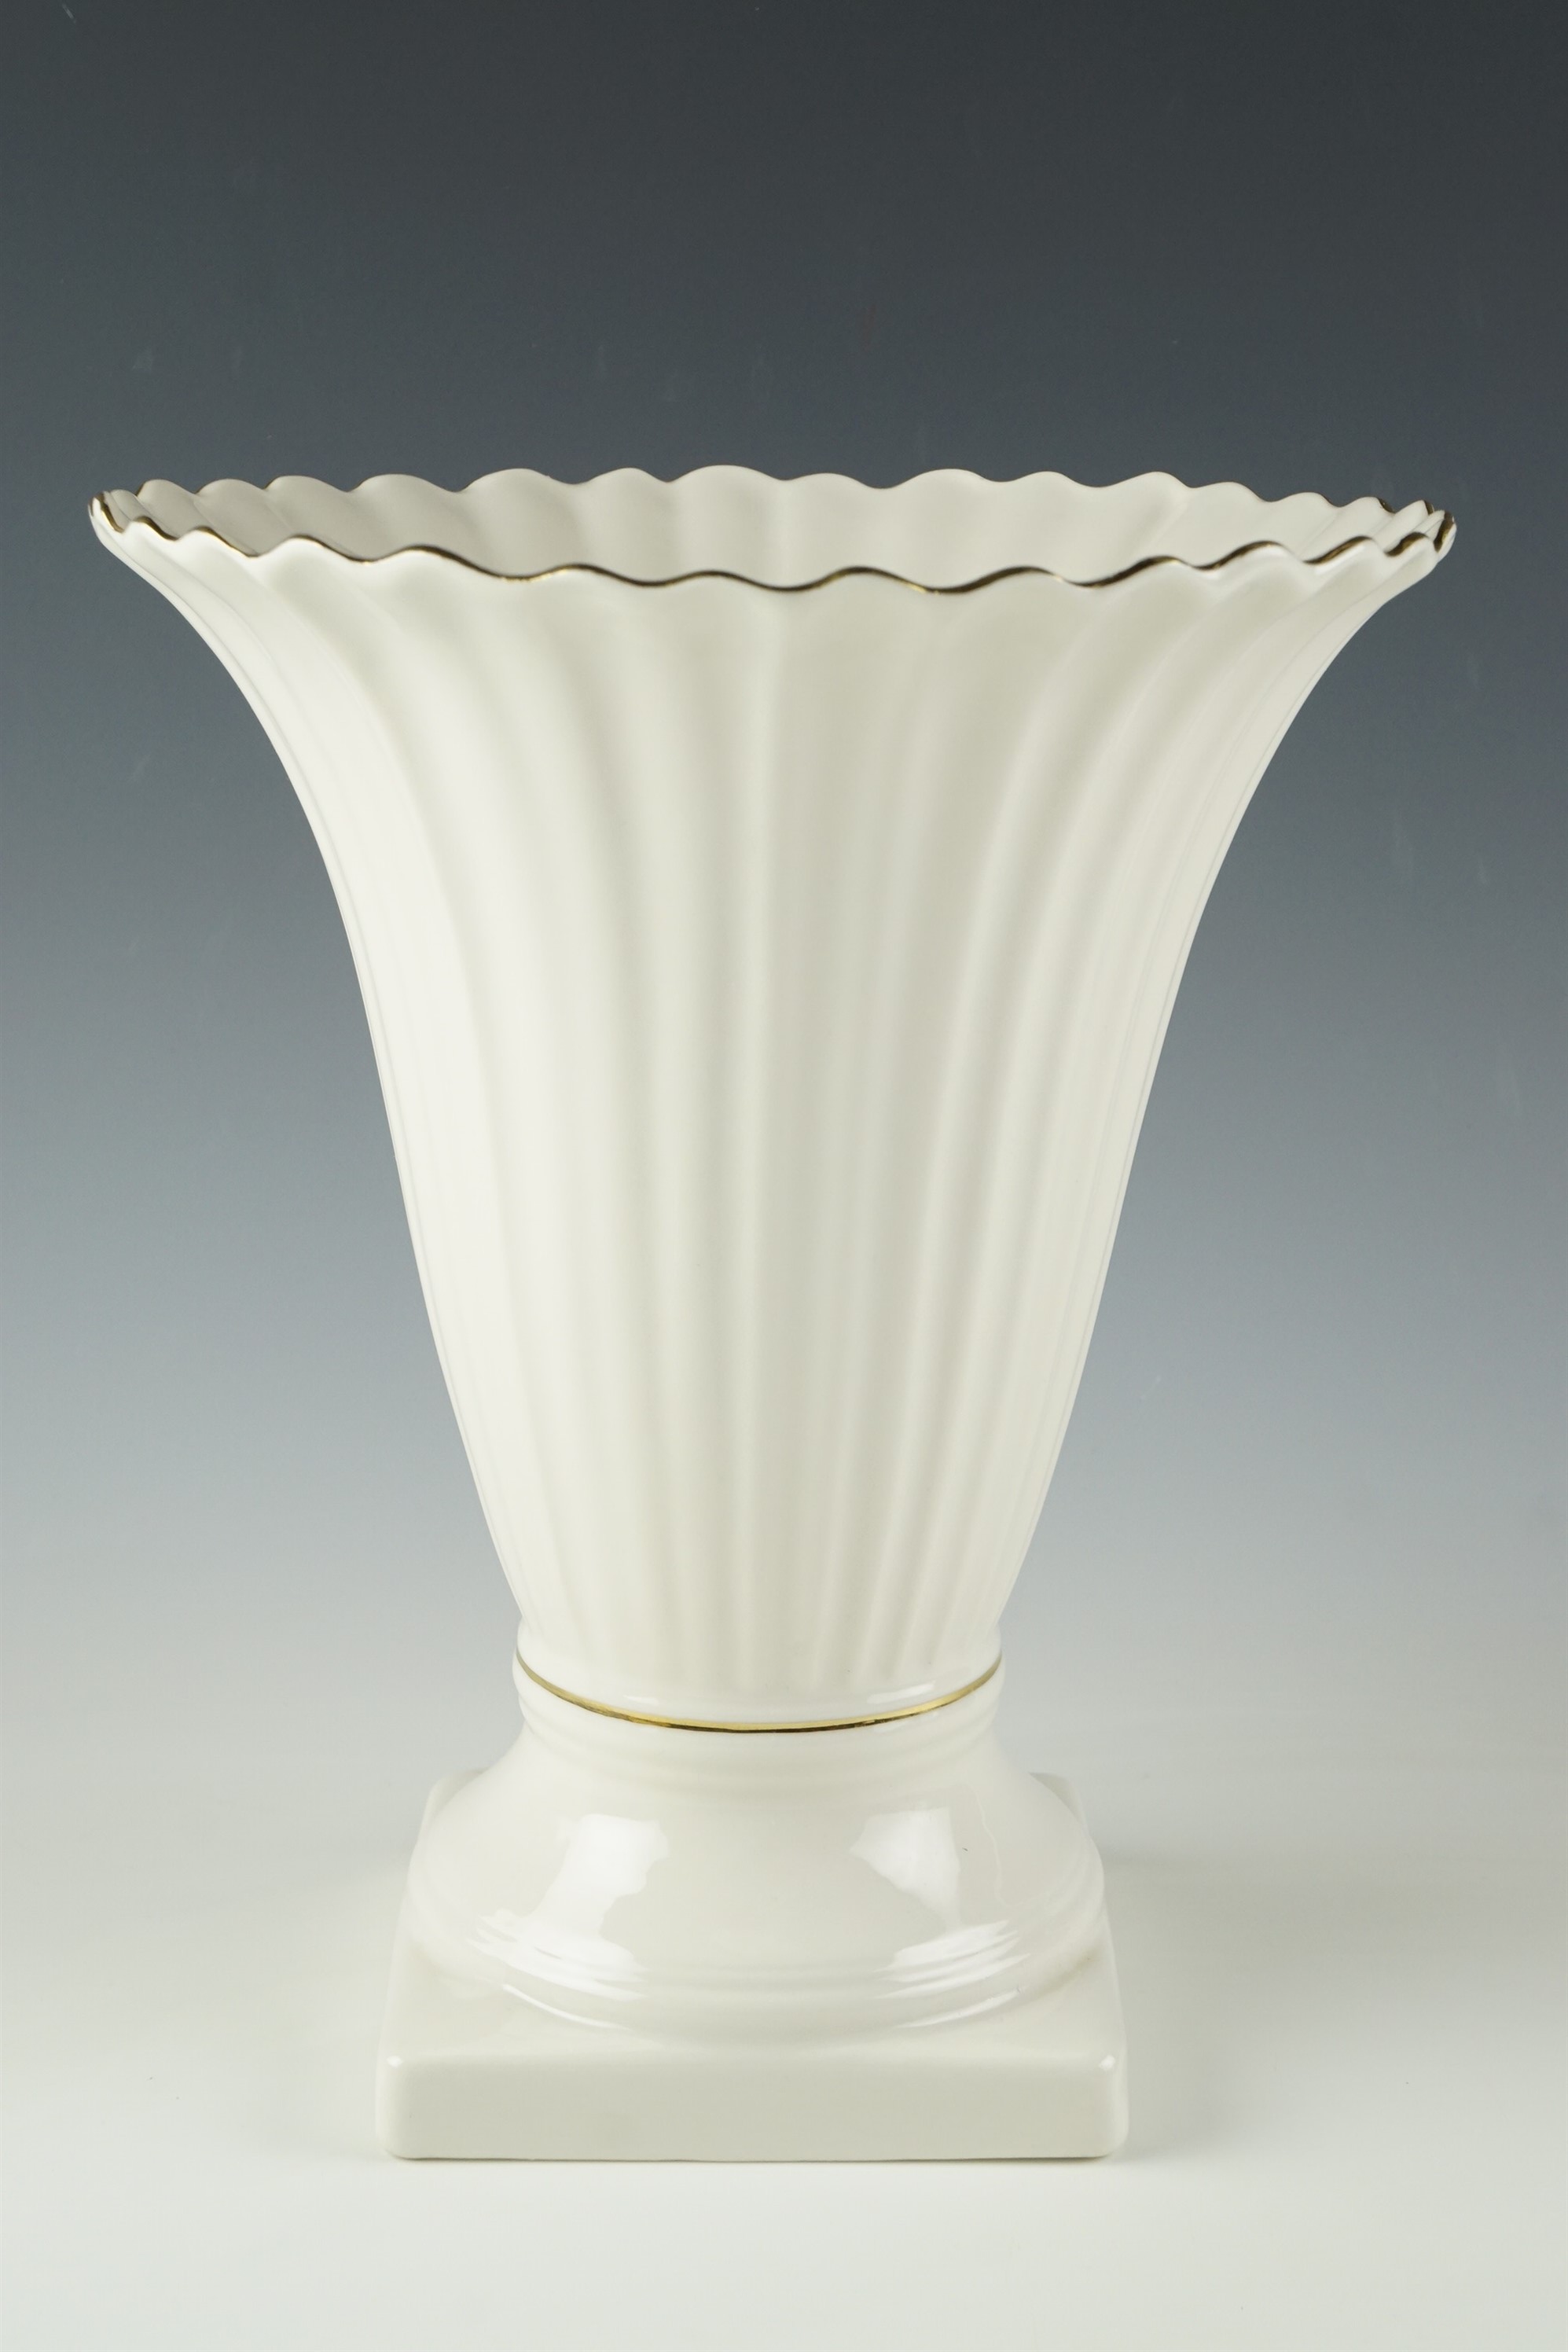 A large Belleek vase, 21.5 x 25.5 cm